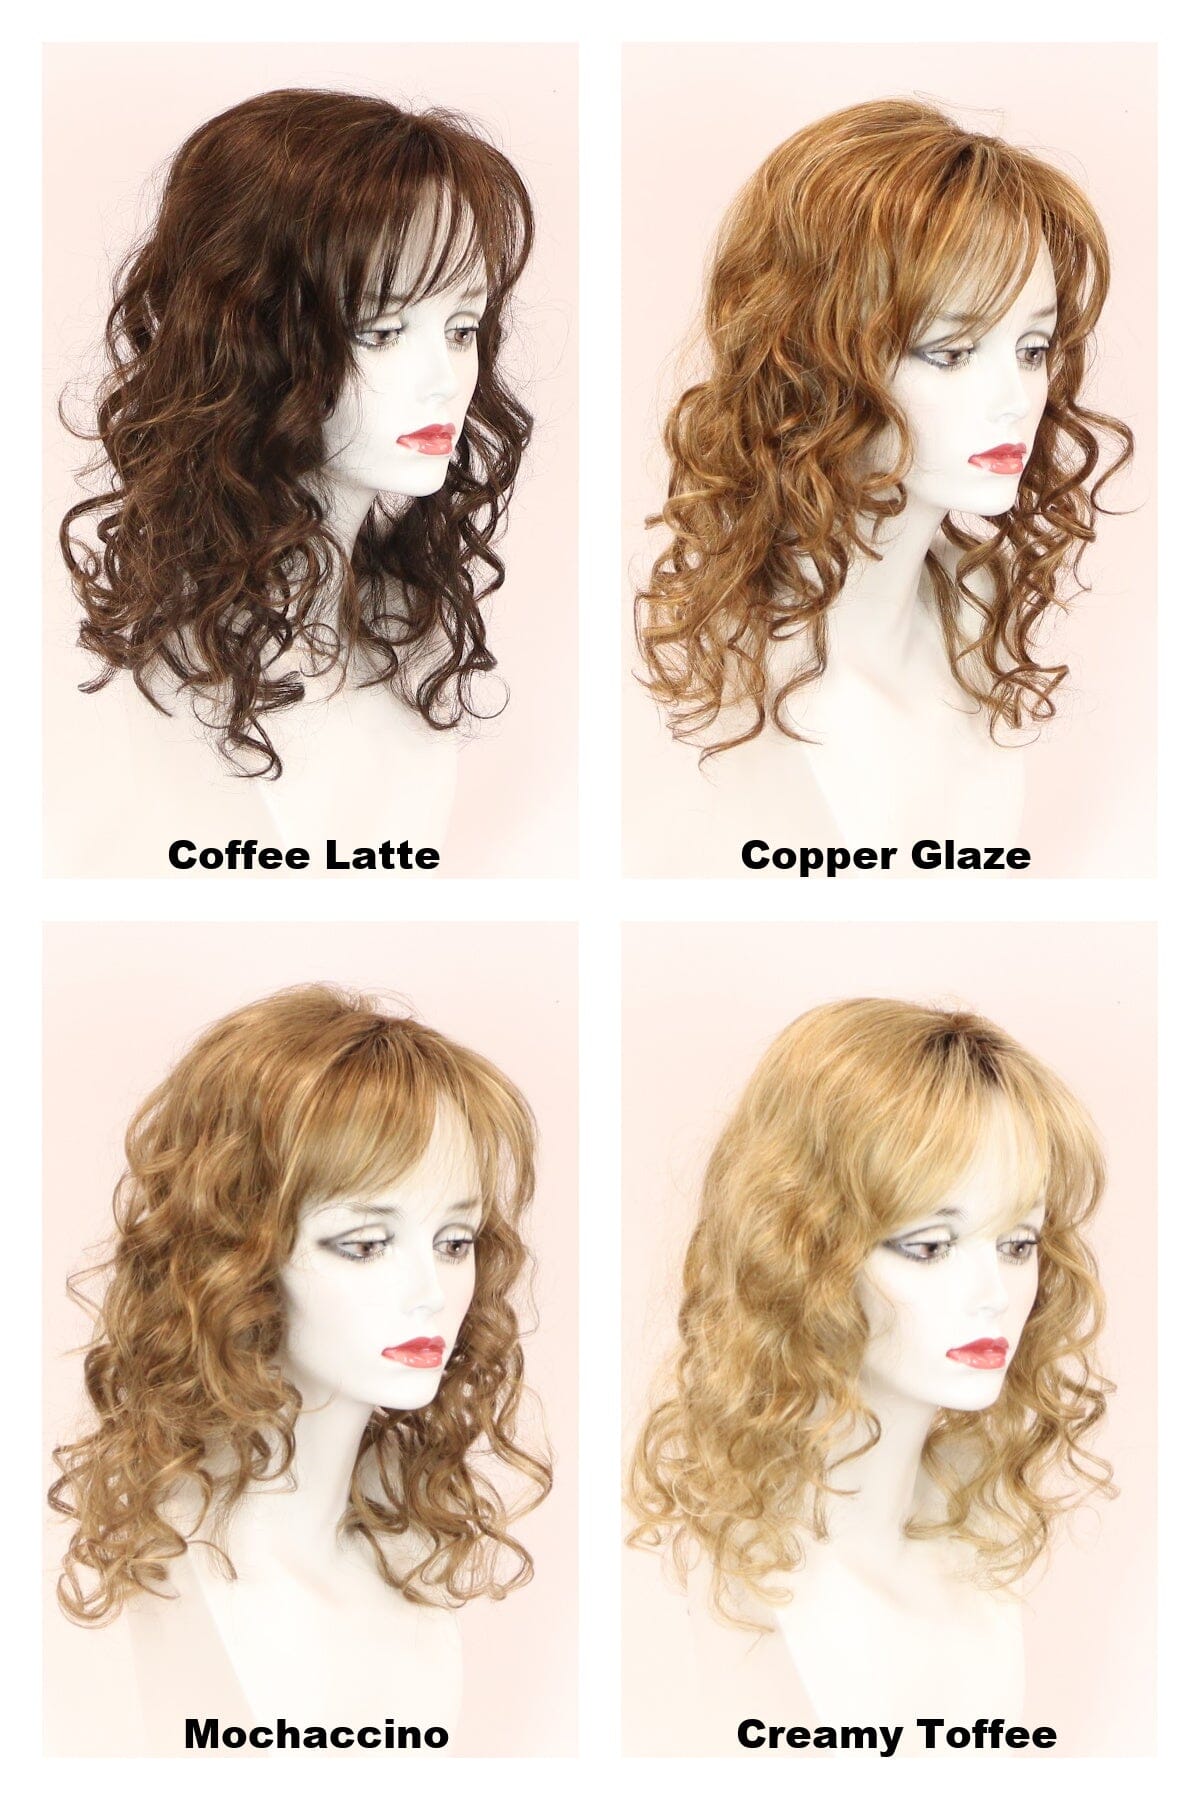 Paris Top w/ Roots Hair Pieces Godiva's Secret Wigs 